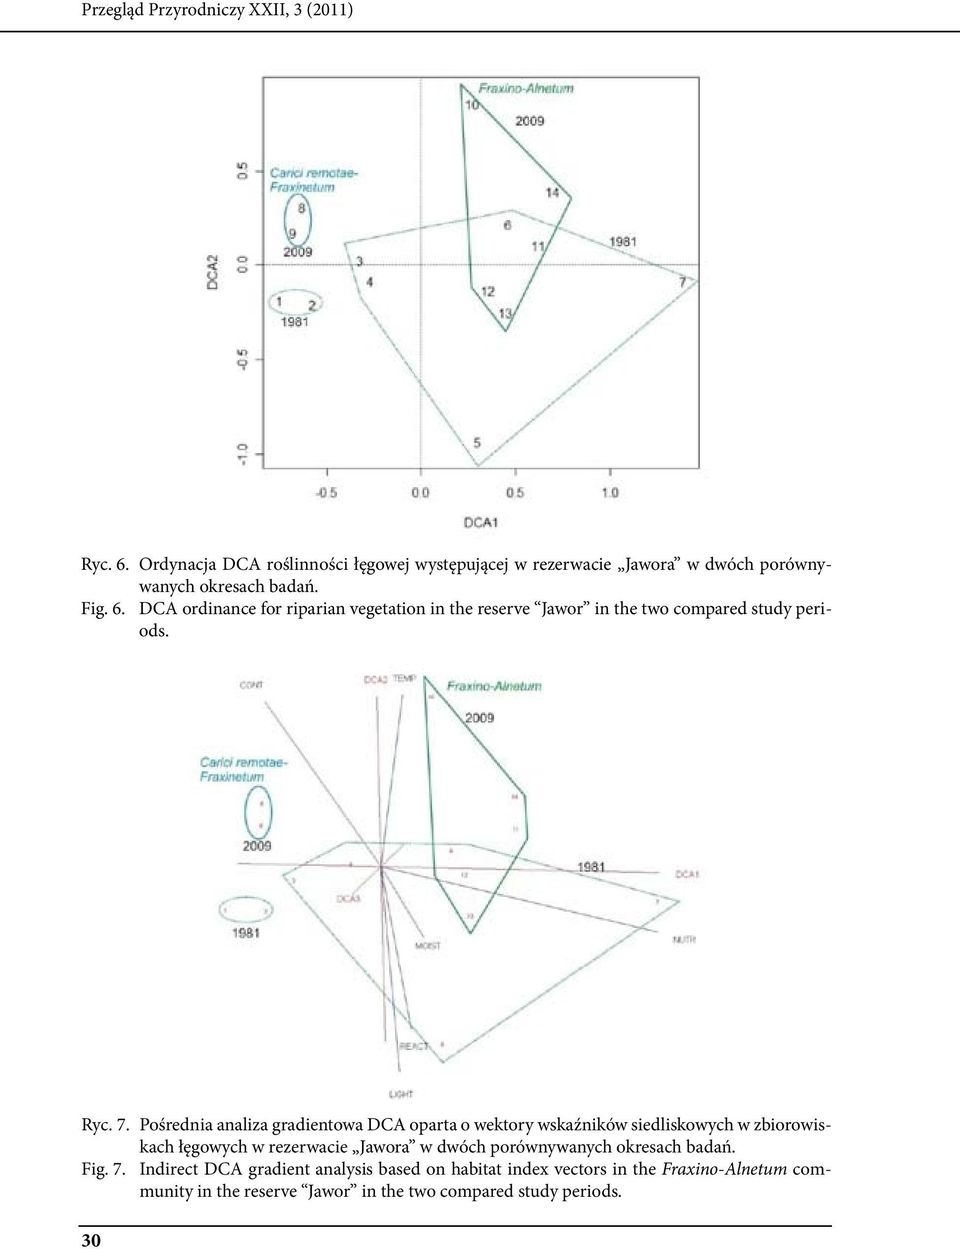 Pośrednia analiza gradientowa DCA oparta o wektory wskaźników siedliskowych w zbiorowiskach łęgowych w rezerwacie Jawora w dwóch porównywanych